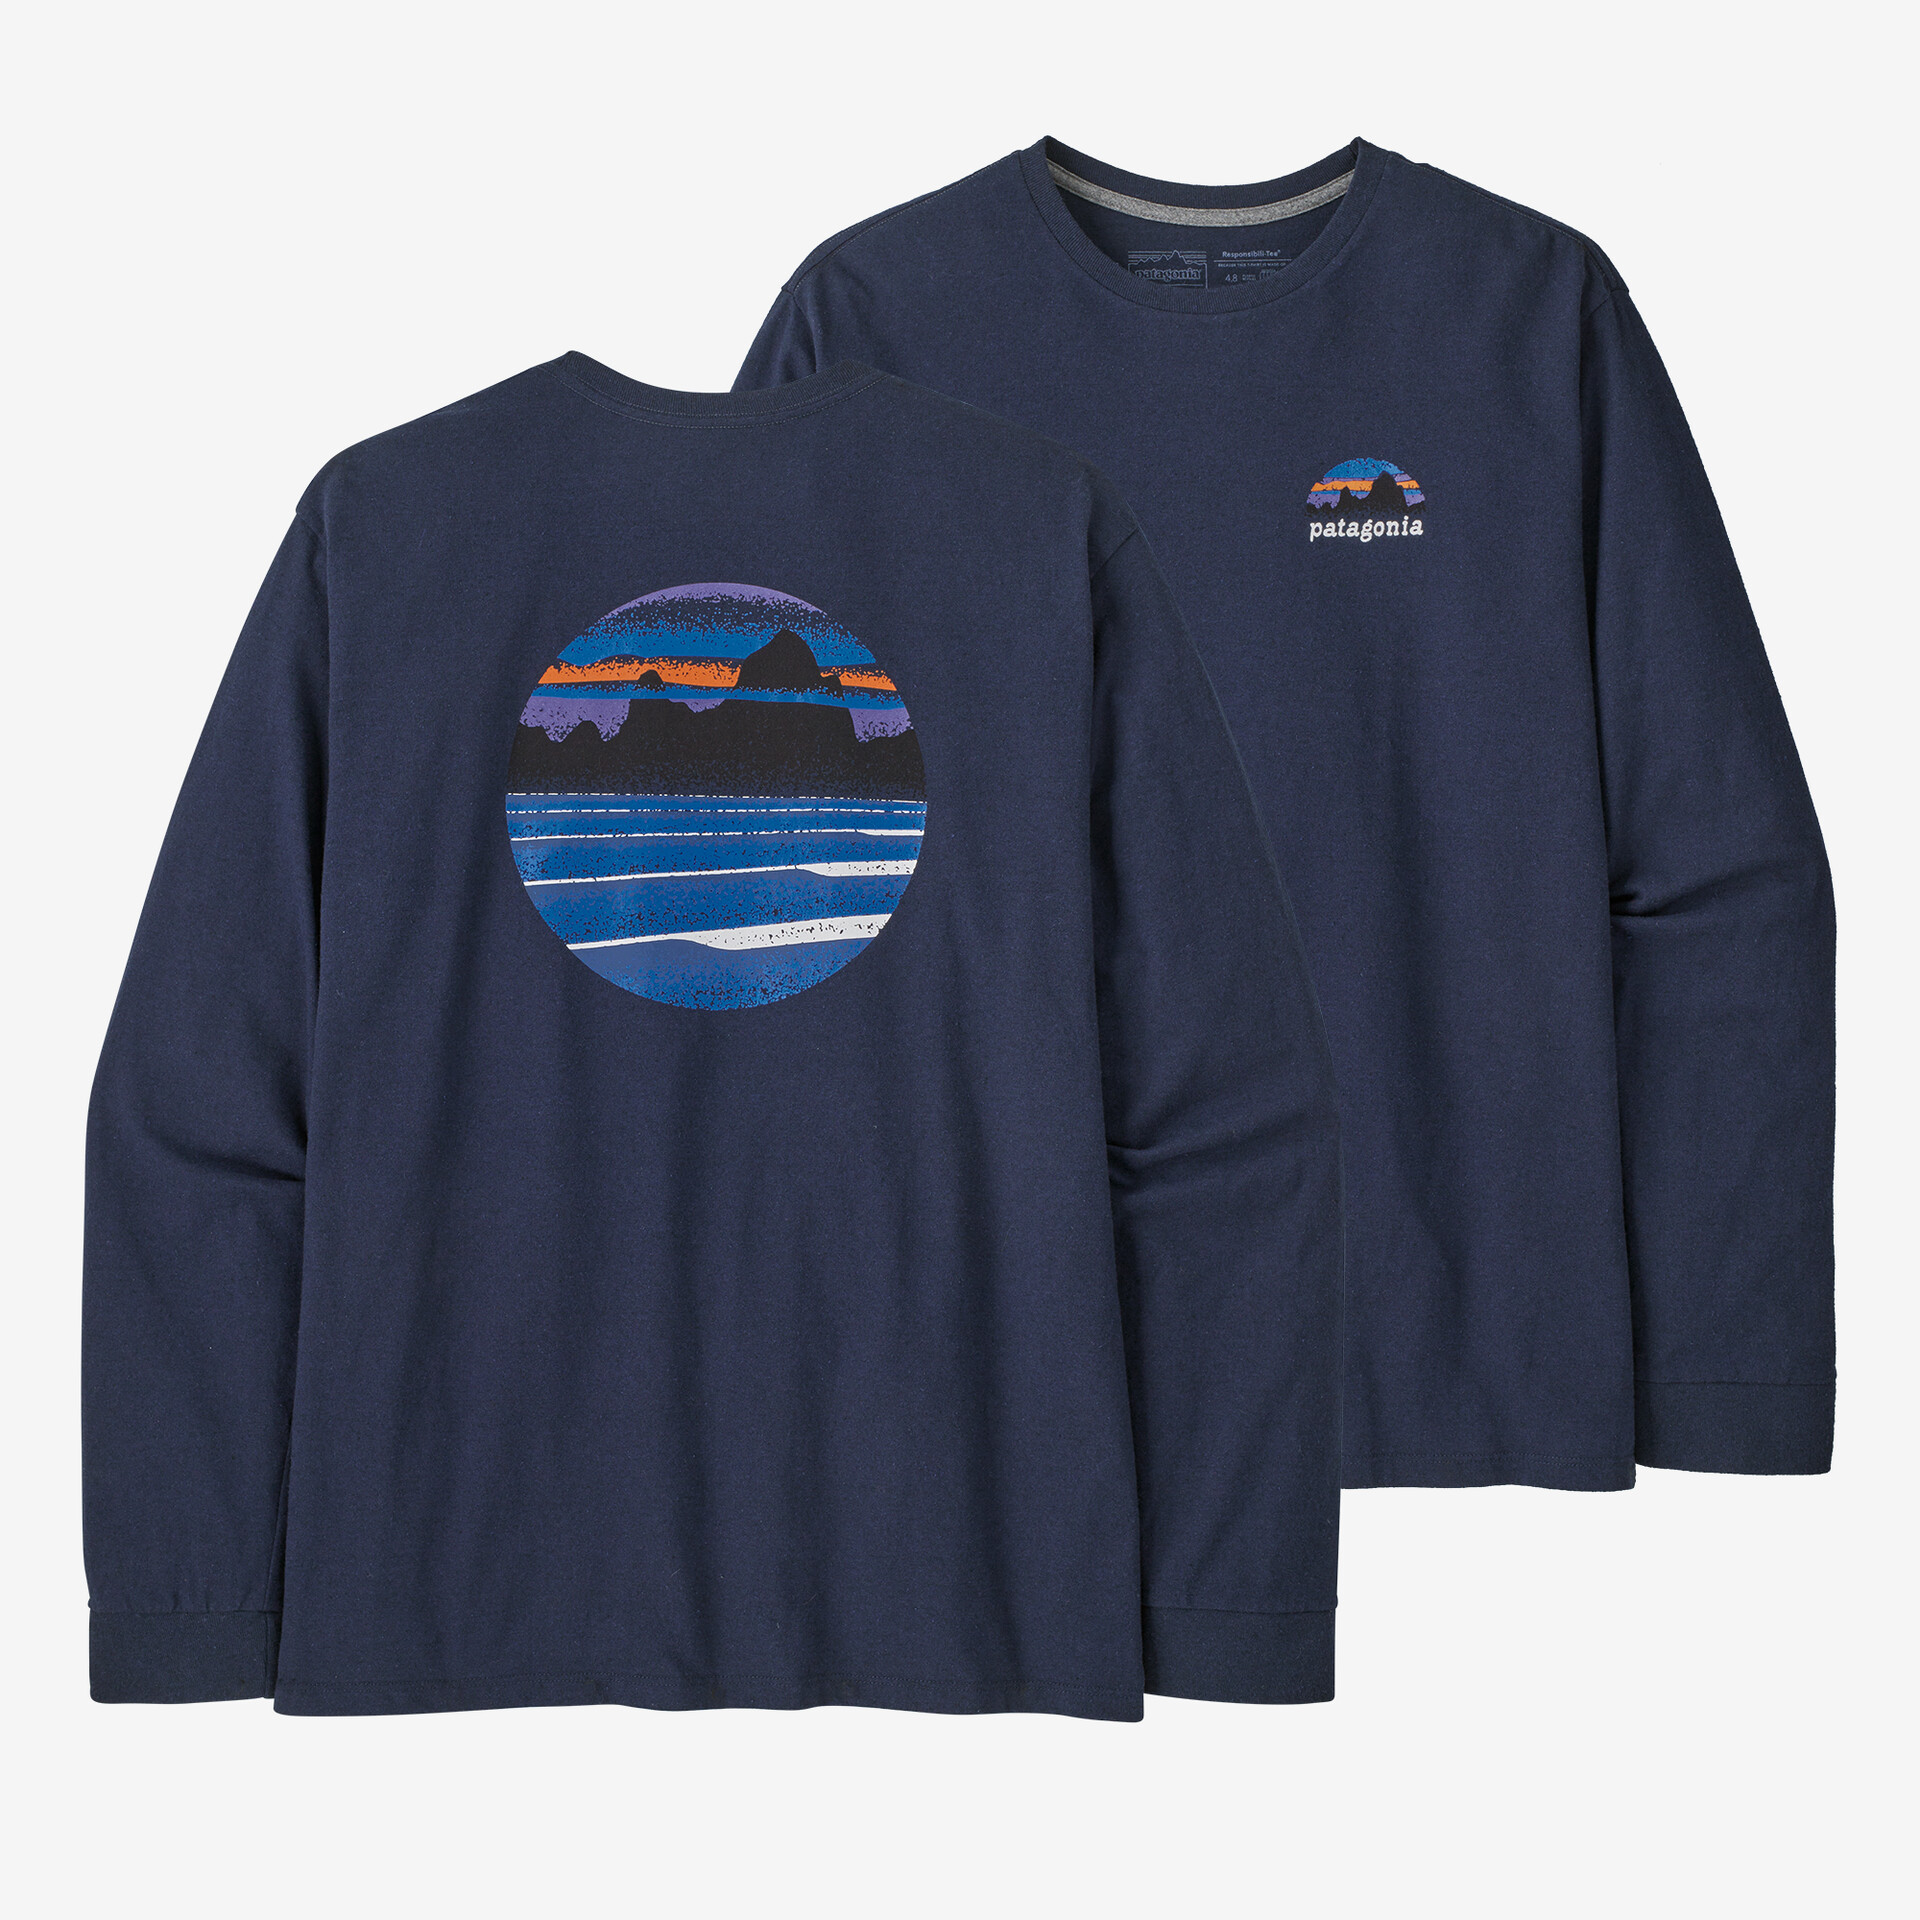 Мужская футболка Skyline Stencil Responsibili с длинными рукавами Patagonia, новый темно-синий